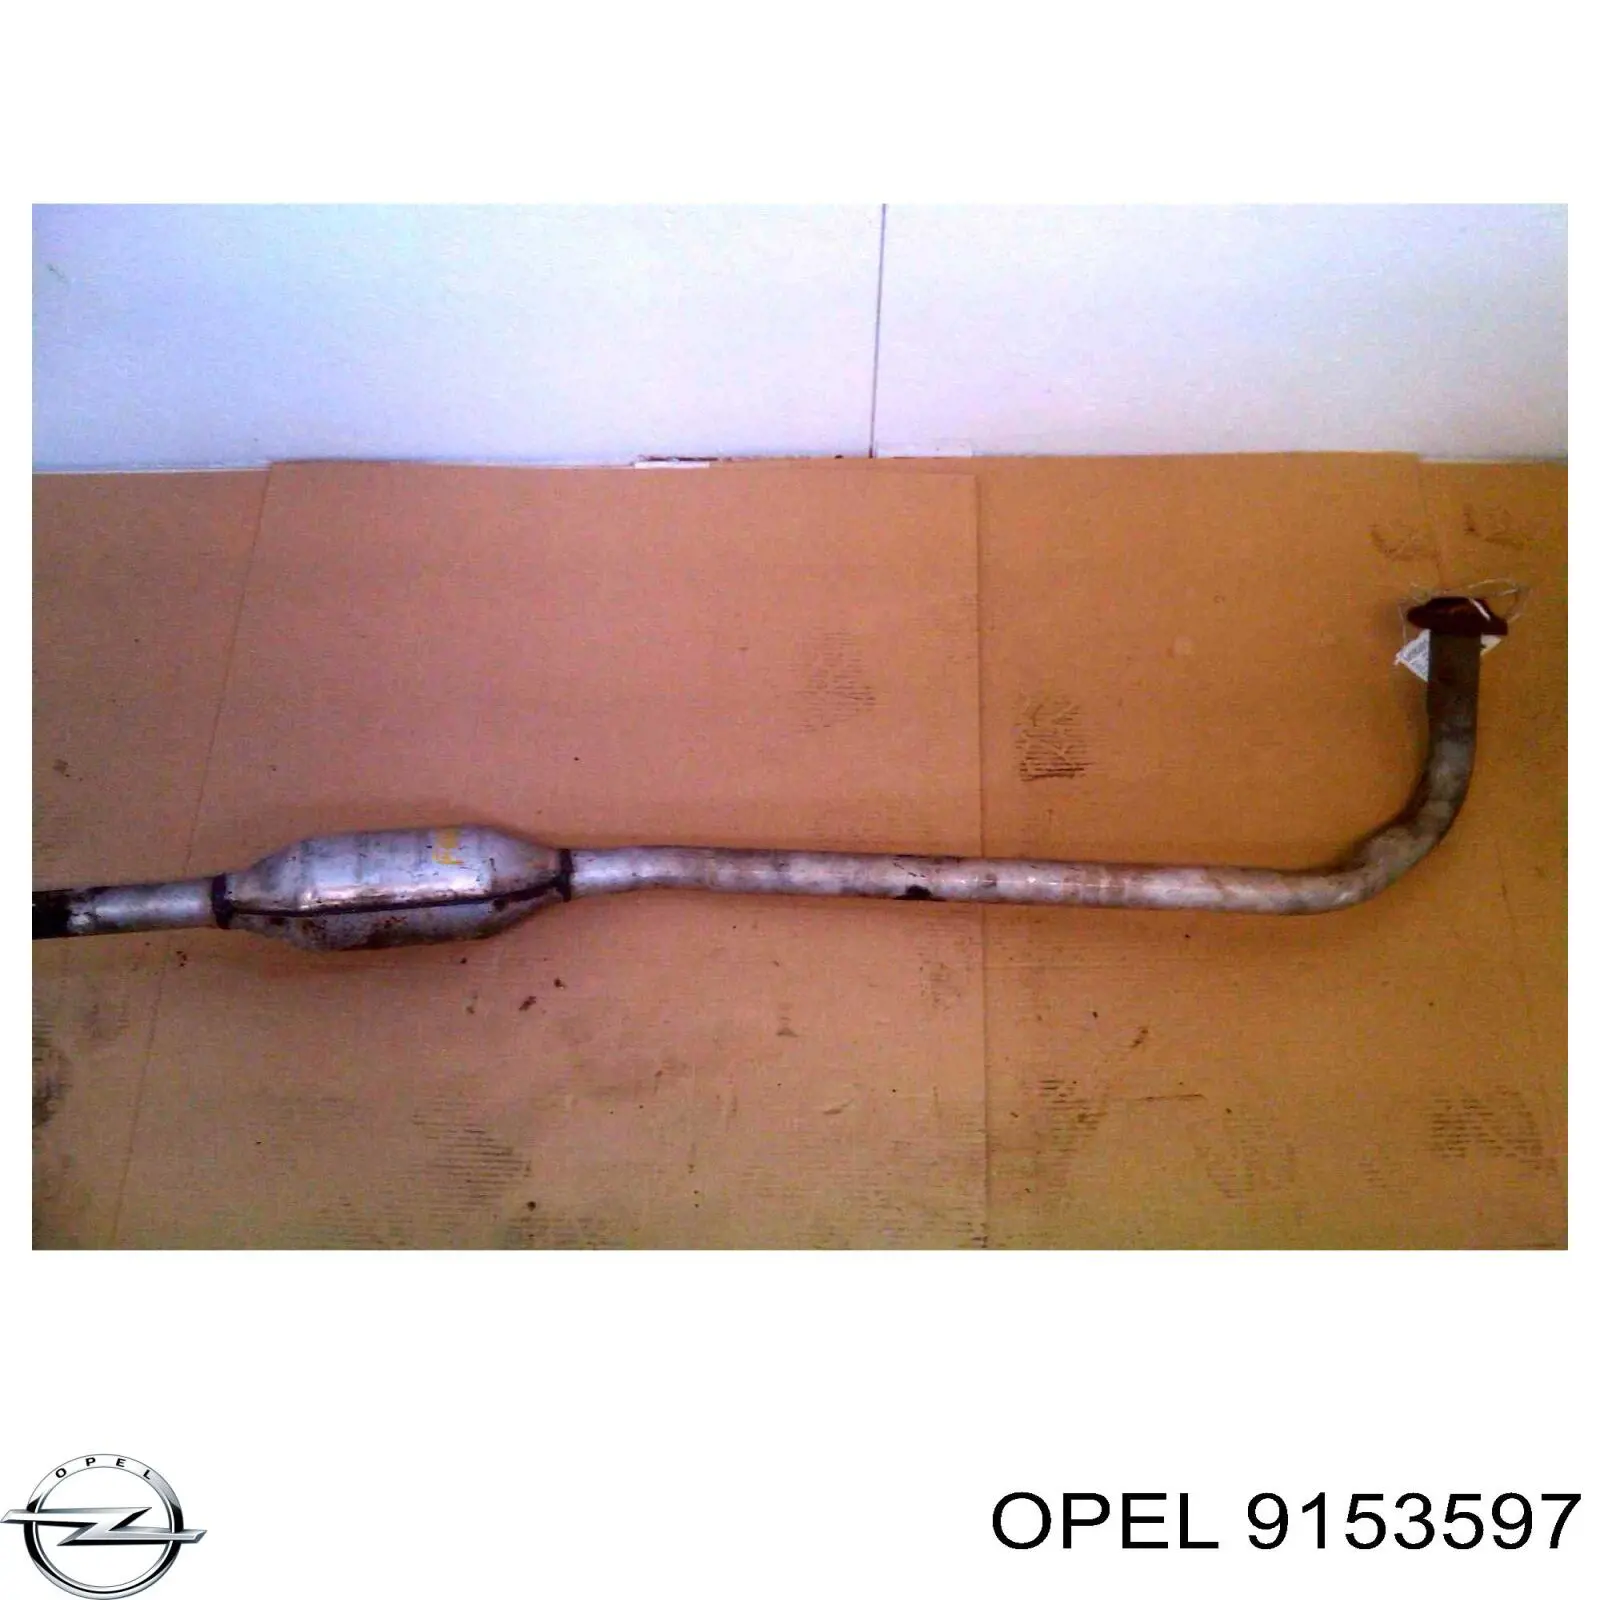 9153597 Opel motor de acionamento de vidro da porta dianteira esquerda